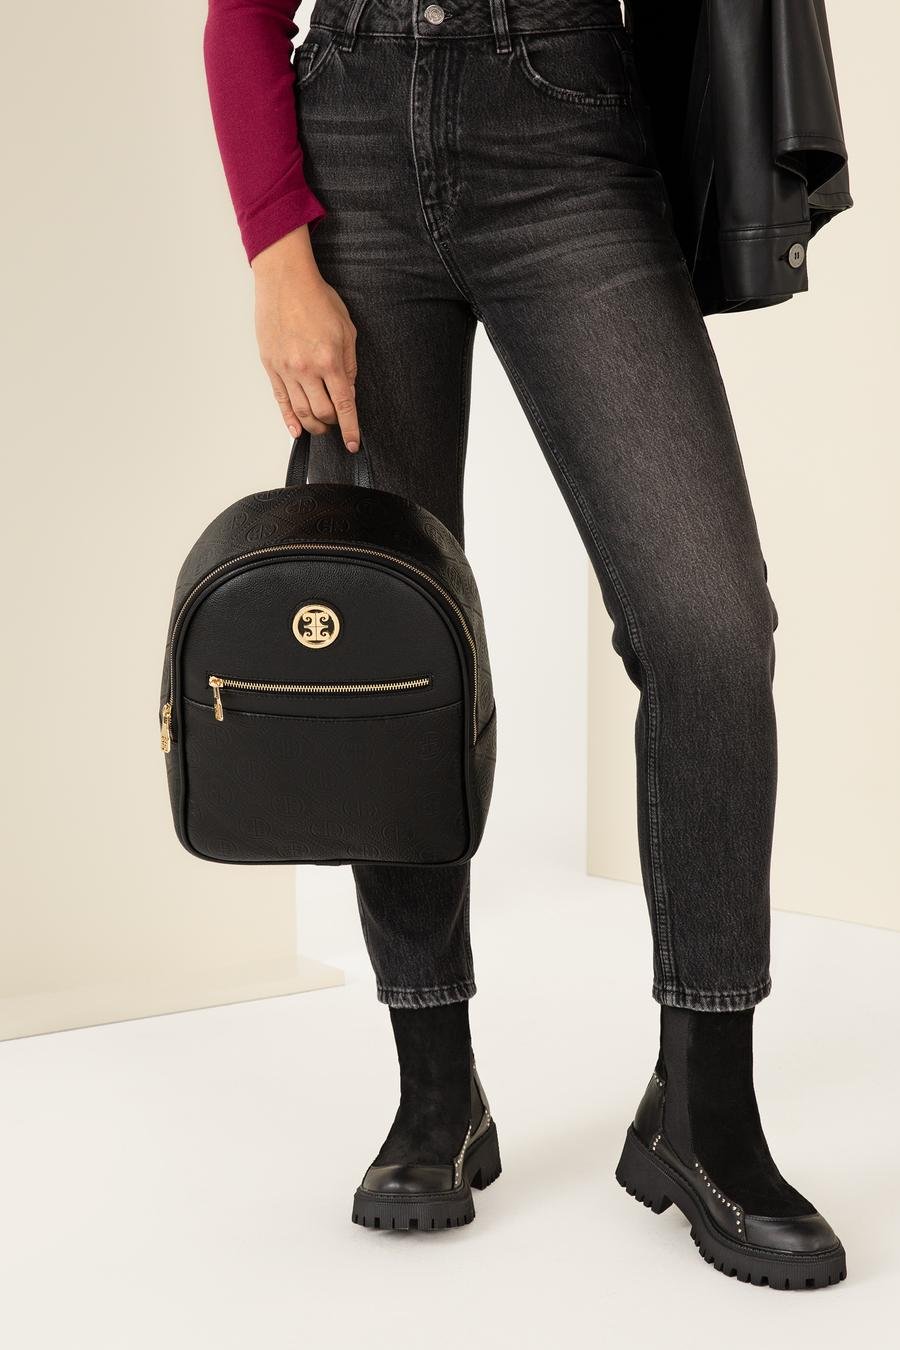 کیف  سیاه  استاندارد  زنانه  پیرکاردین